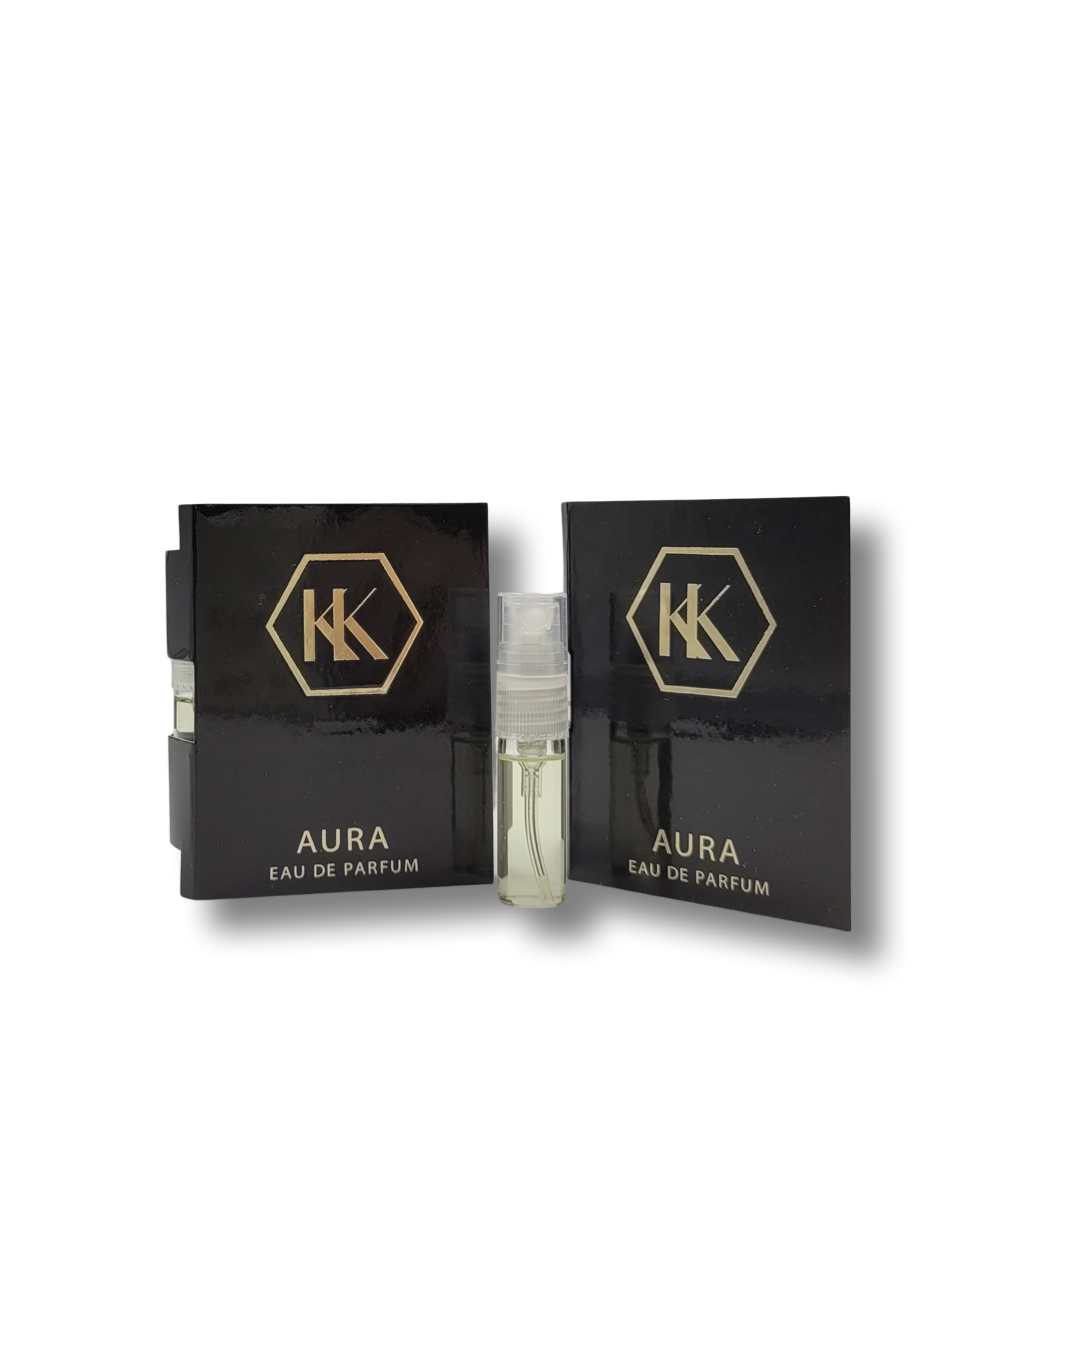 Vzorek Aura eau de parfum